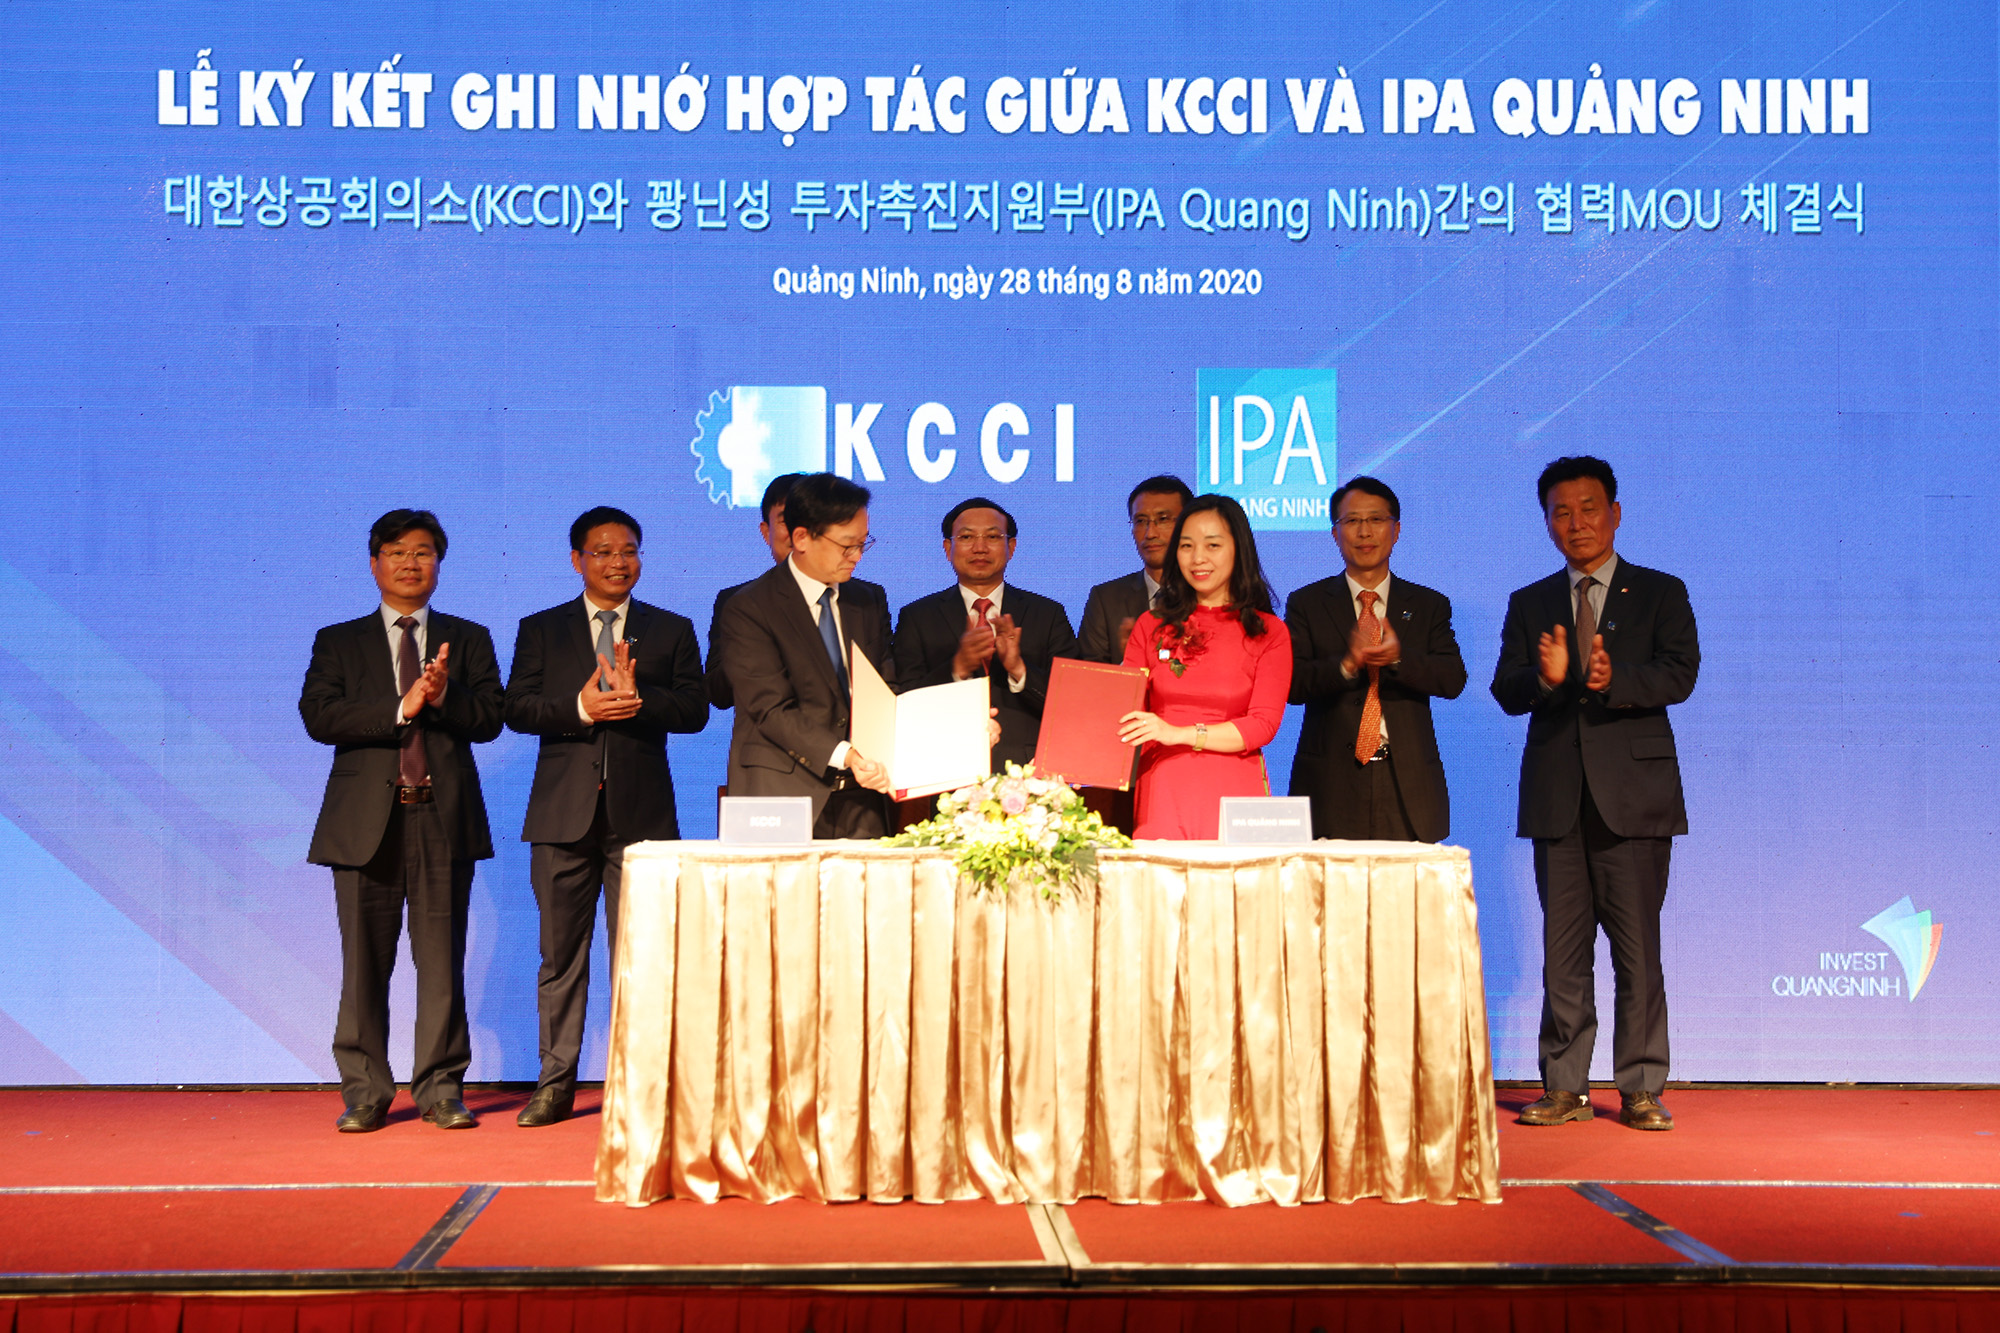 Lễ Ký kết ghi nhớ hợp tác giữa KCCI và IPA Quảng Ninh tại hội nghị. Ảnh: Đỗ Phương